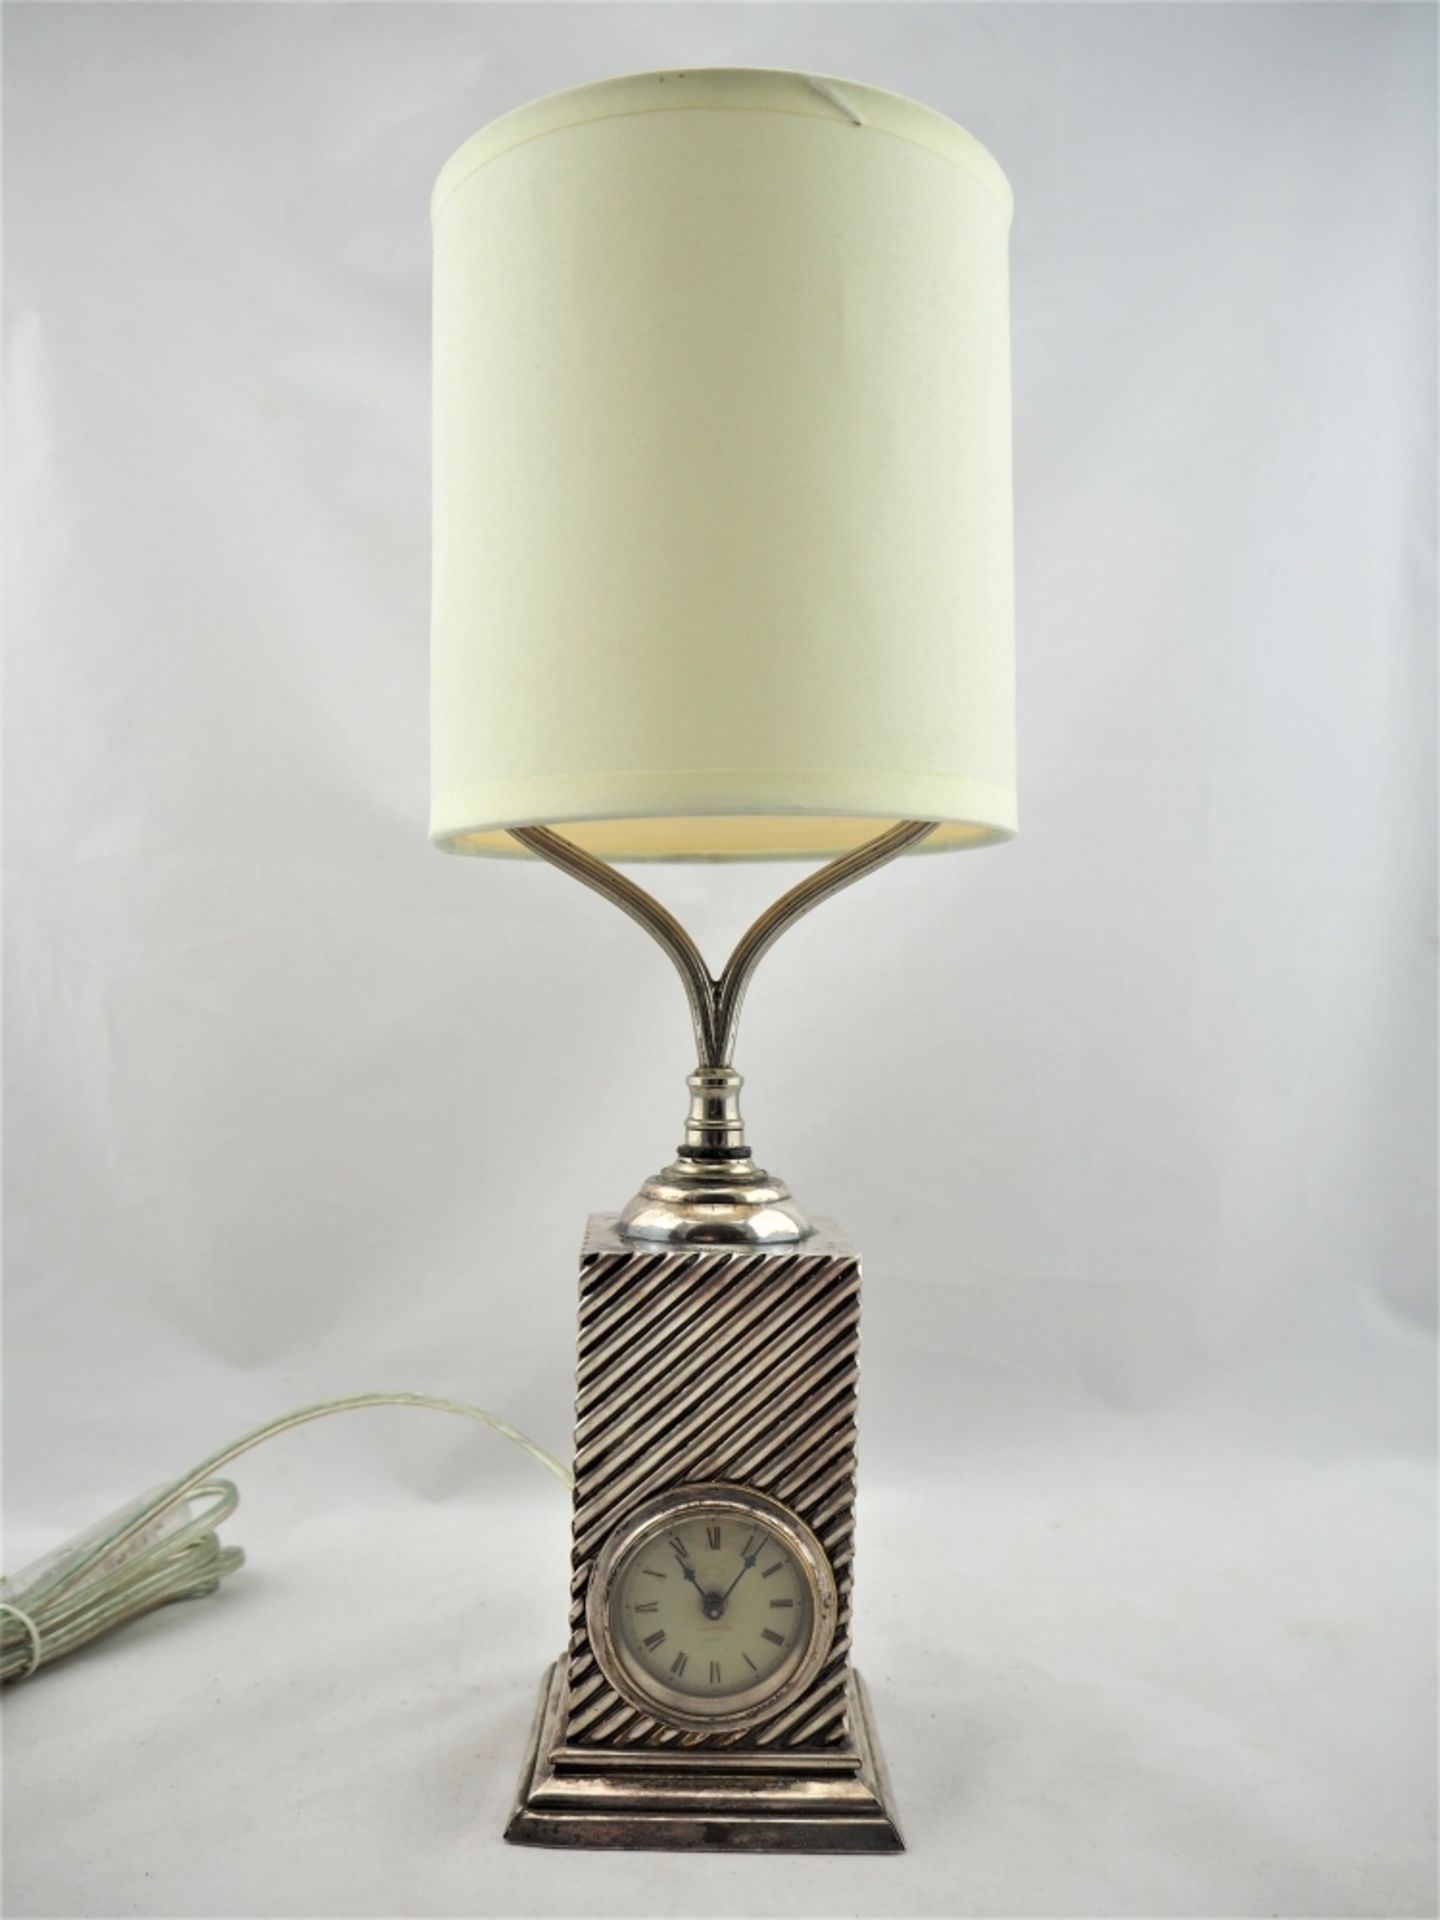 Tischlampe mit Uhr, um 1920Profilierter Stand, darüber viereckiger Korpus. Schräg gerill - Bild 4 aus 7